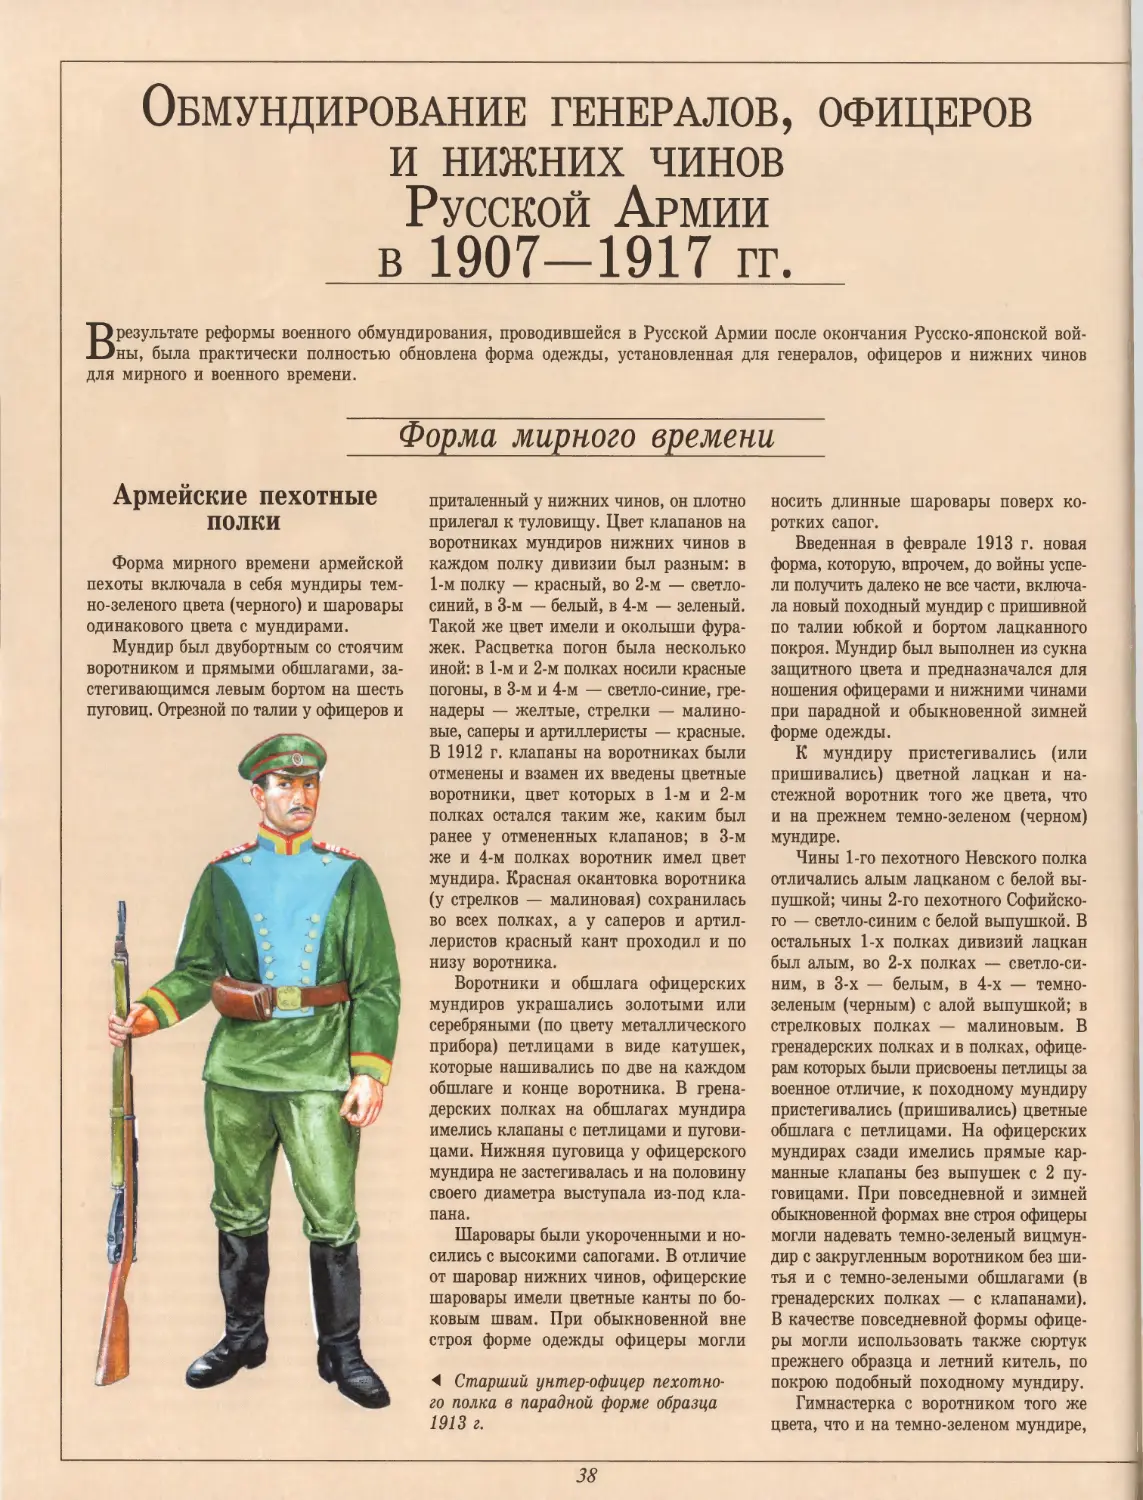 Обмундирование генералов, офицеров и нижних чинов Русской Армии в 1907—1917 гг.